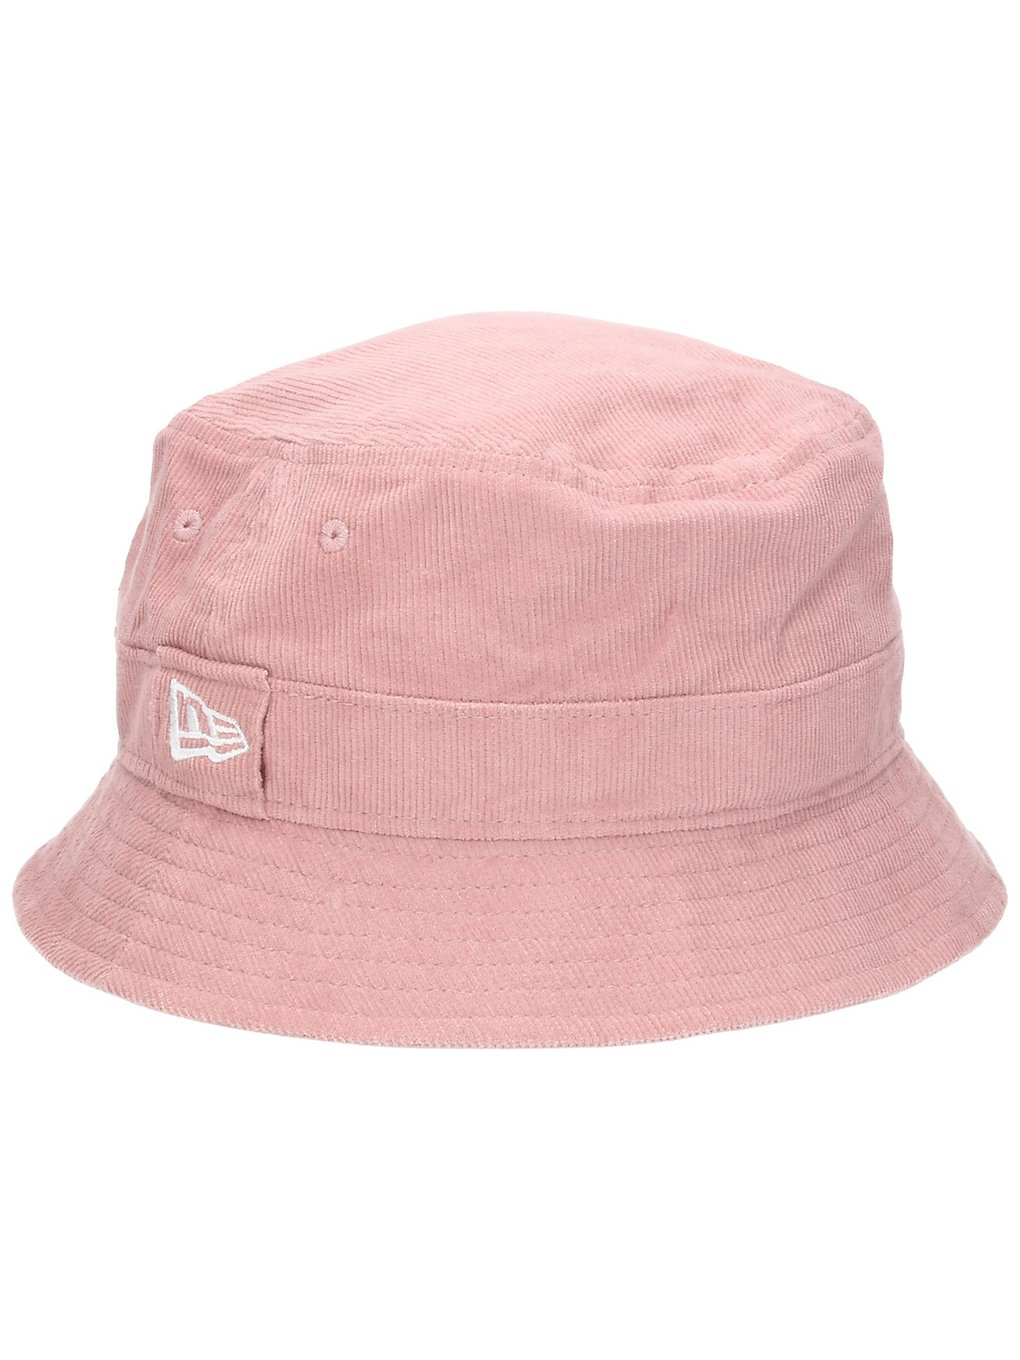 New era cord bucket hat pinkki, new era